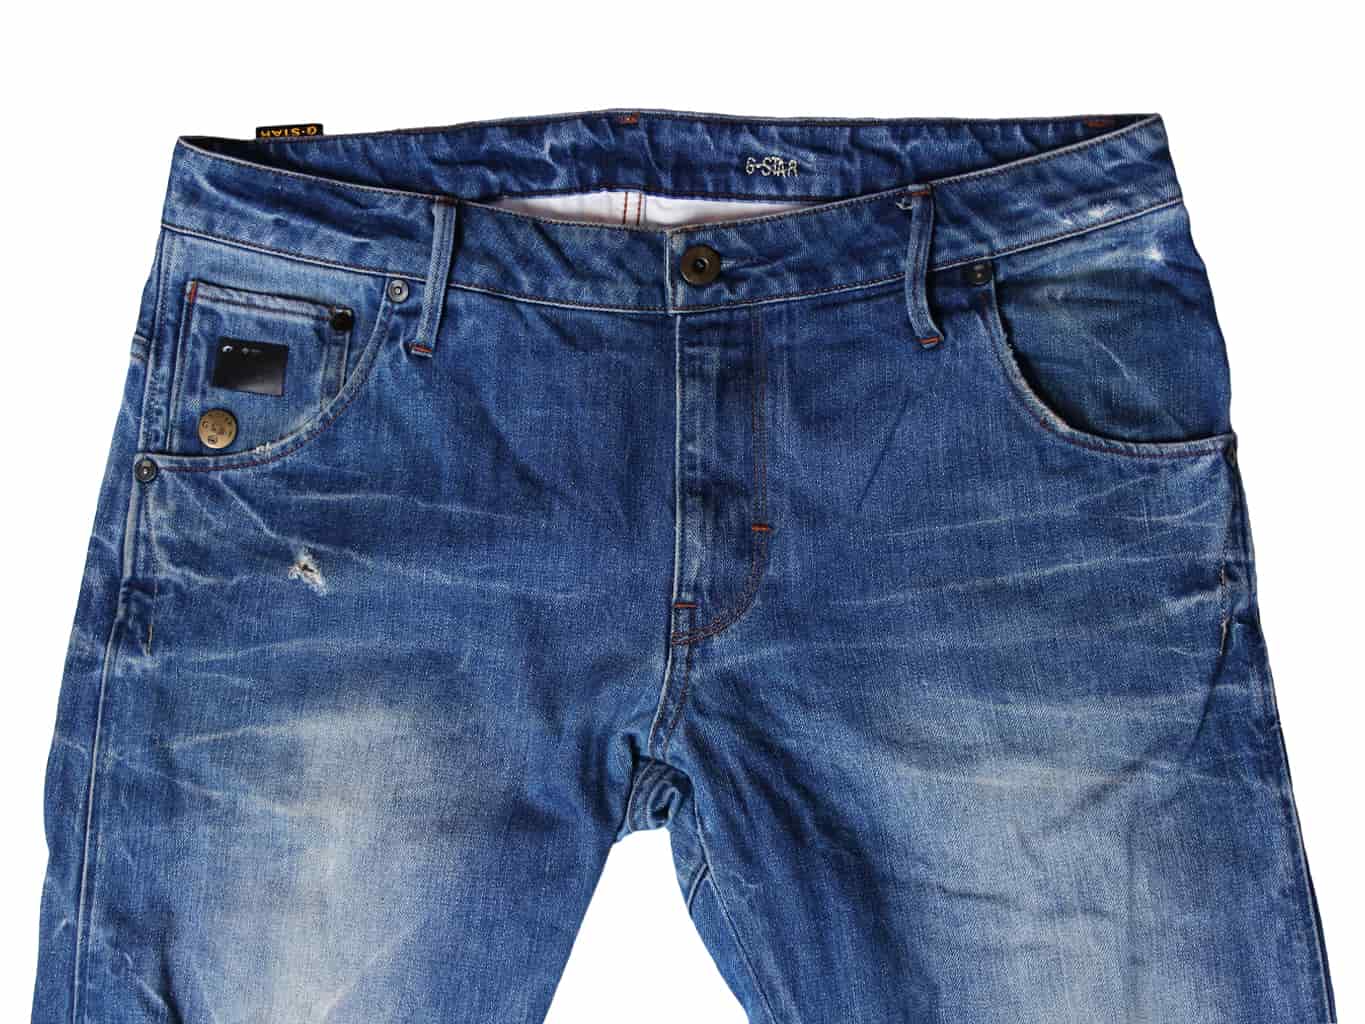 Купить джинсы мужские оригинальные модные модели | интернет магазине Jeans24